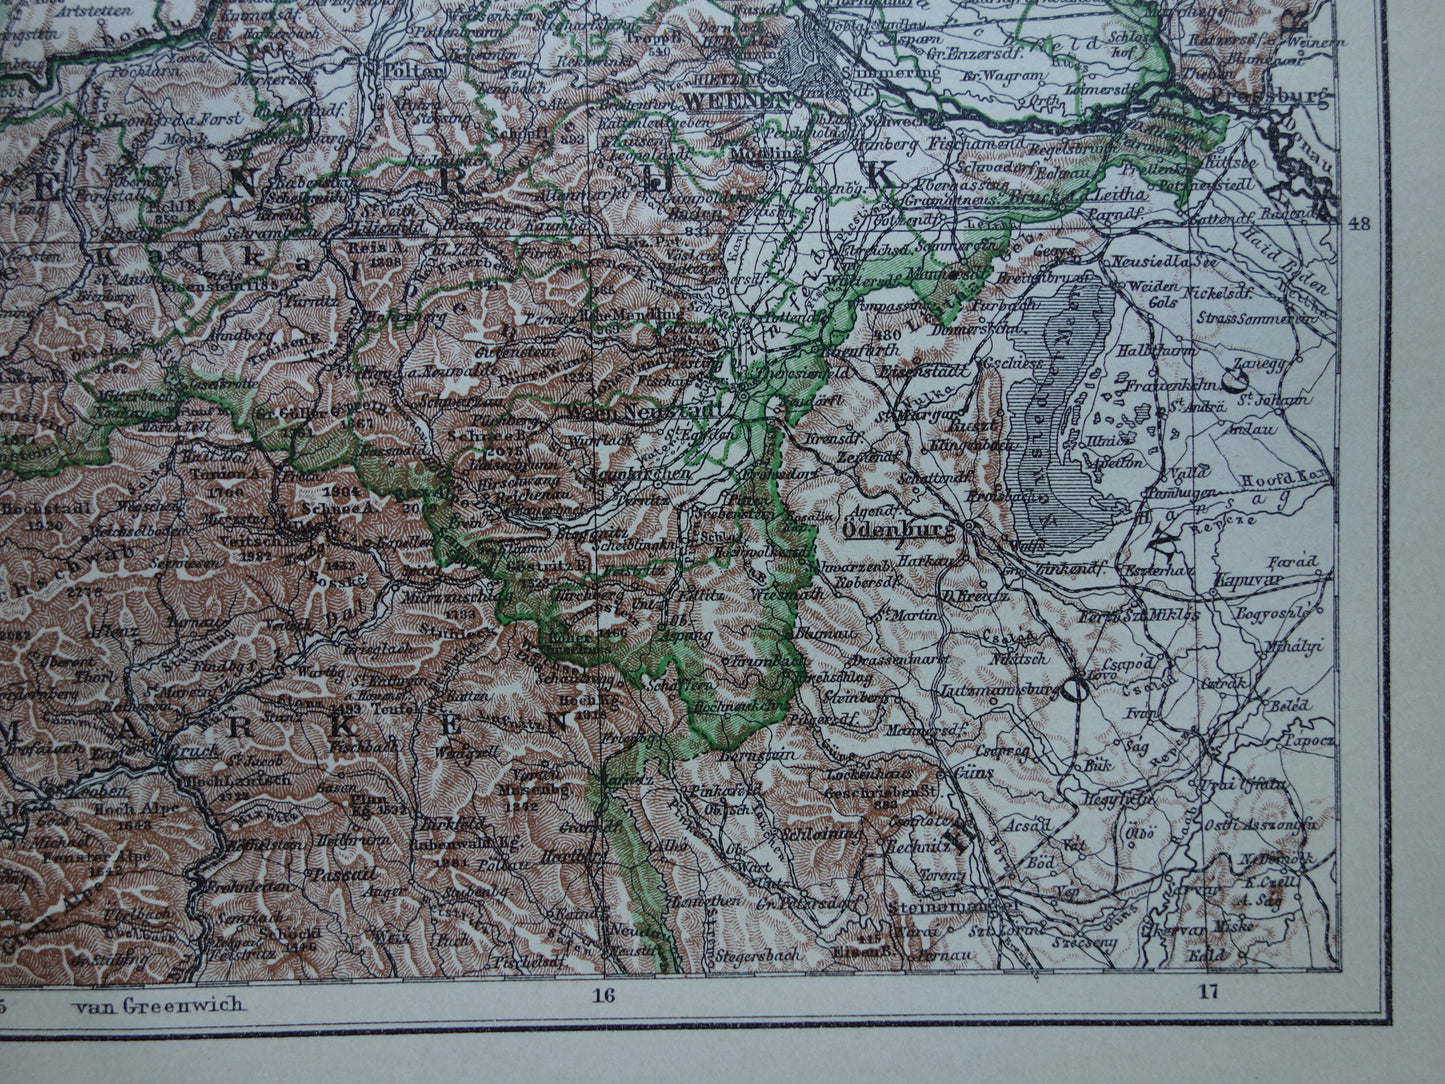 Oude landkaart van Oostenrijk uit 1910 originele vintage kaart Wenen Opper- en Neder-Oostenrijk Antieke Landkaarten Winkel